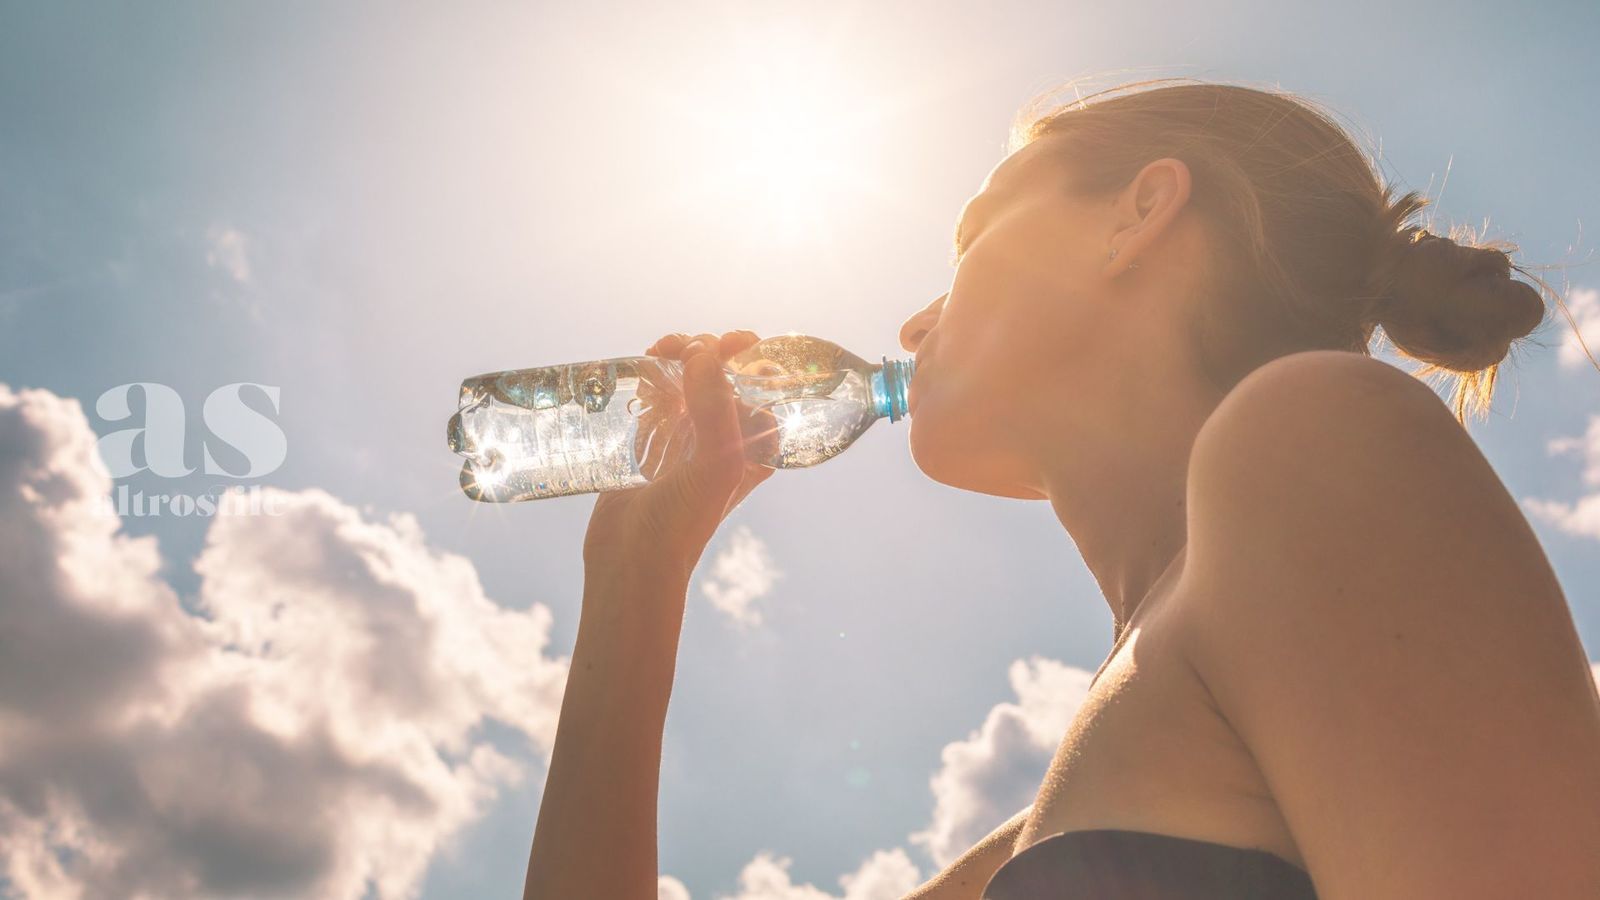 AltroStile • Idratazione e salute: sorprendente connessione reciproca